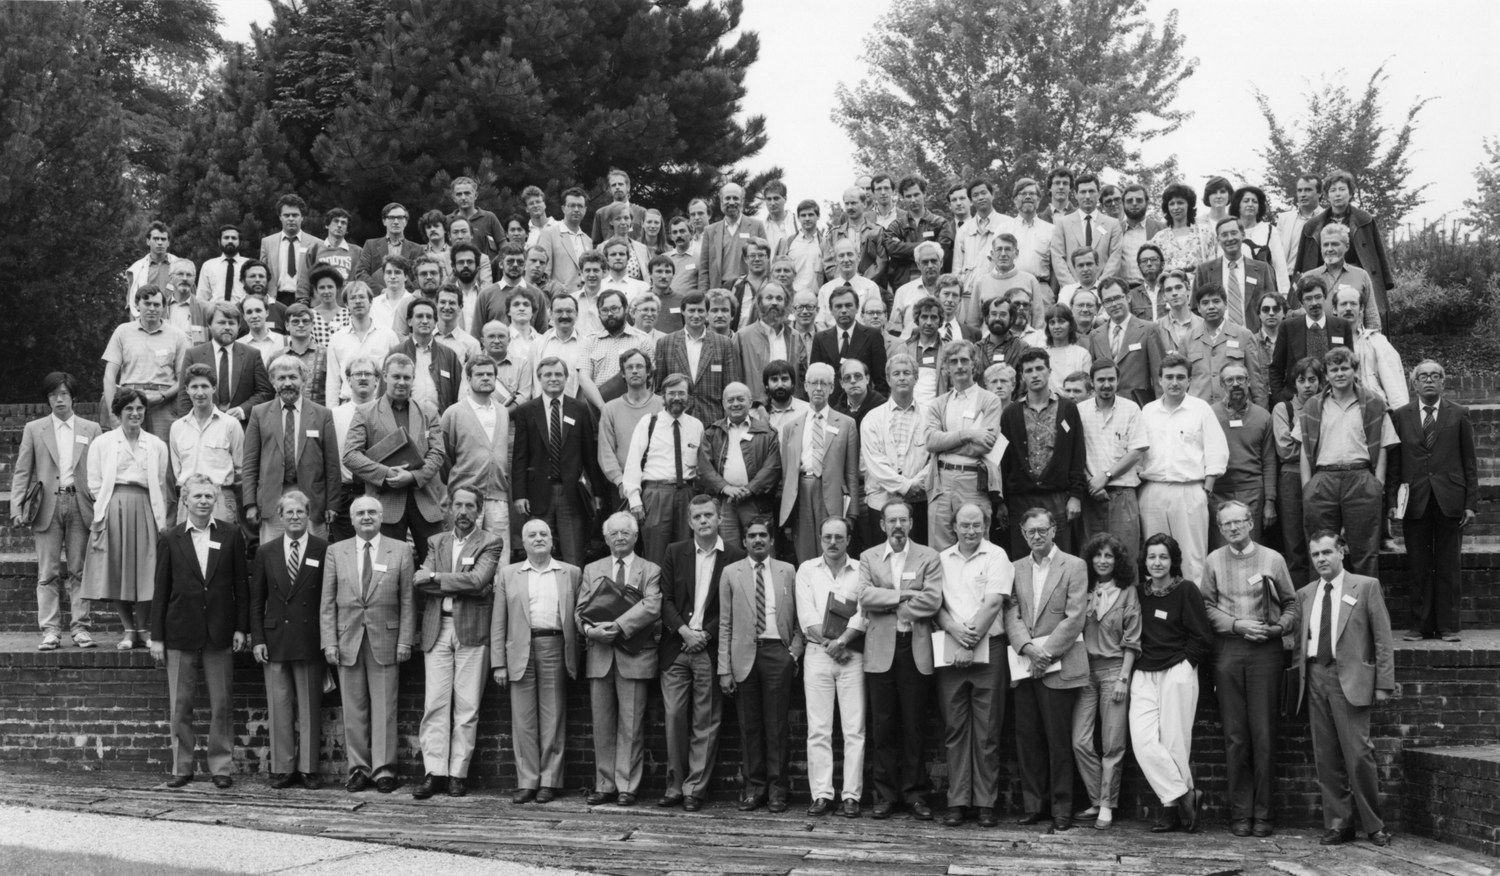 1987 Brussels Meeting - group